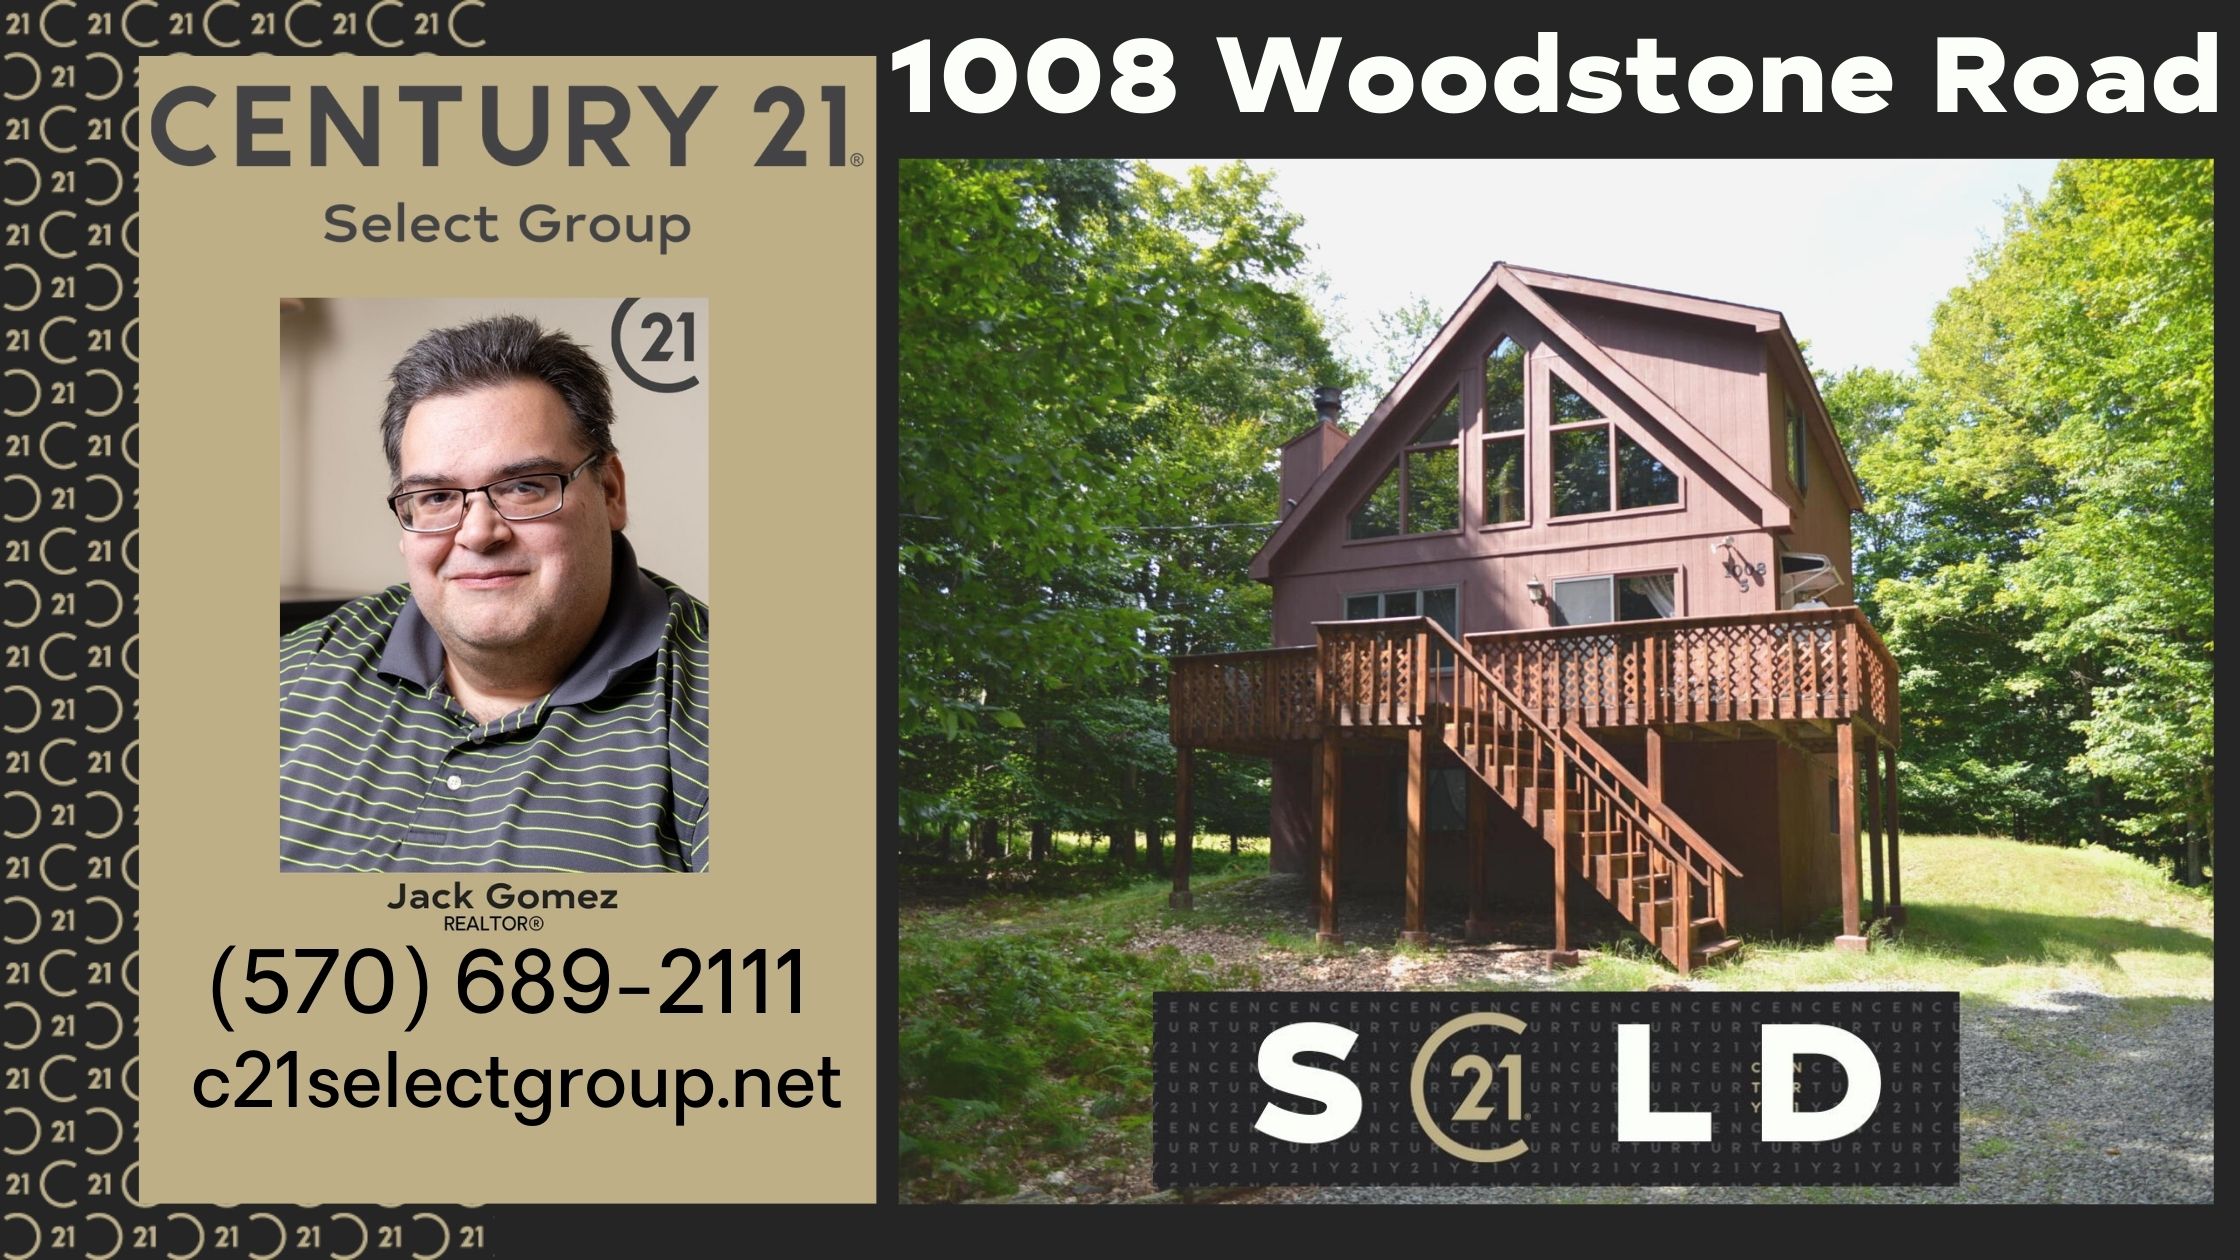 SOLD! 1008 Woodstone Road: Pocono Springs Estates